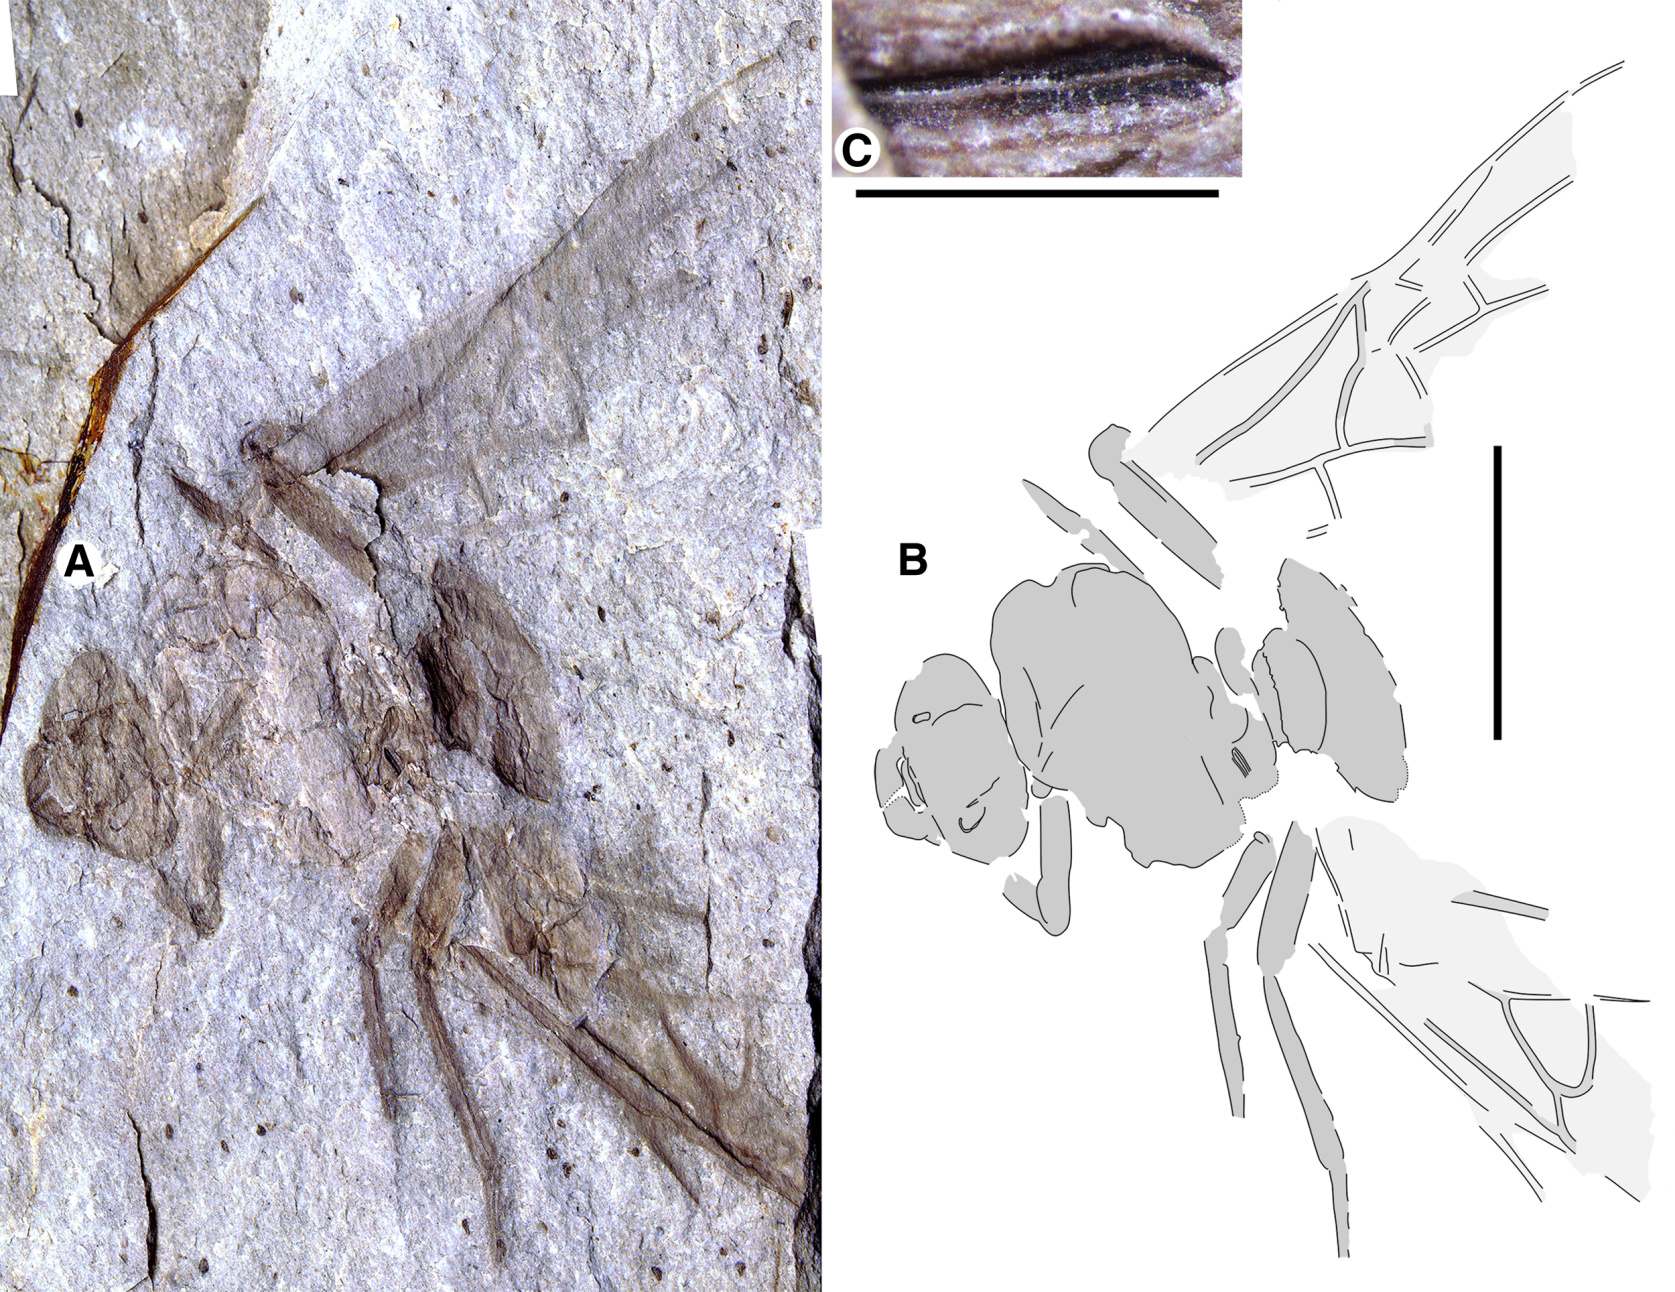 Uriașa furnică regina fosilă Titanomyrma, descoperită recent în Formația Allenby de lângă Princeton, Columbia Britanică, prima de acest fel din Canada.